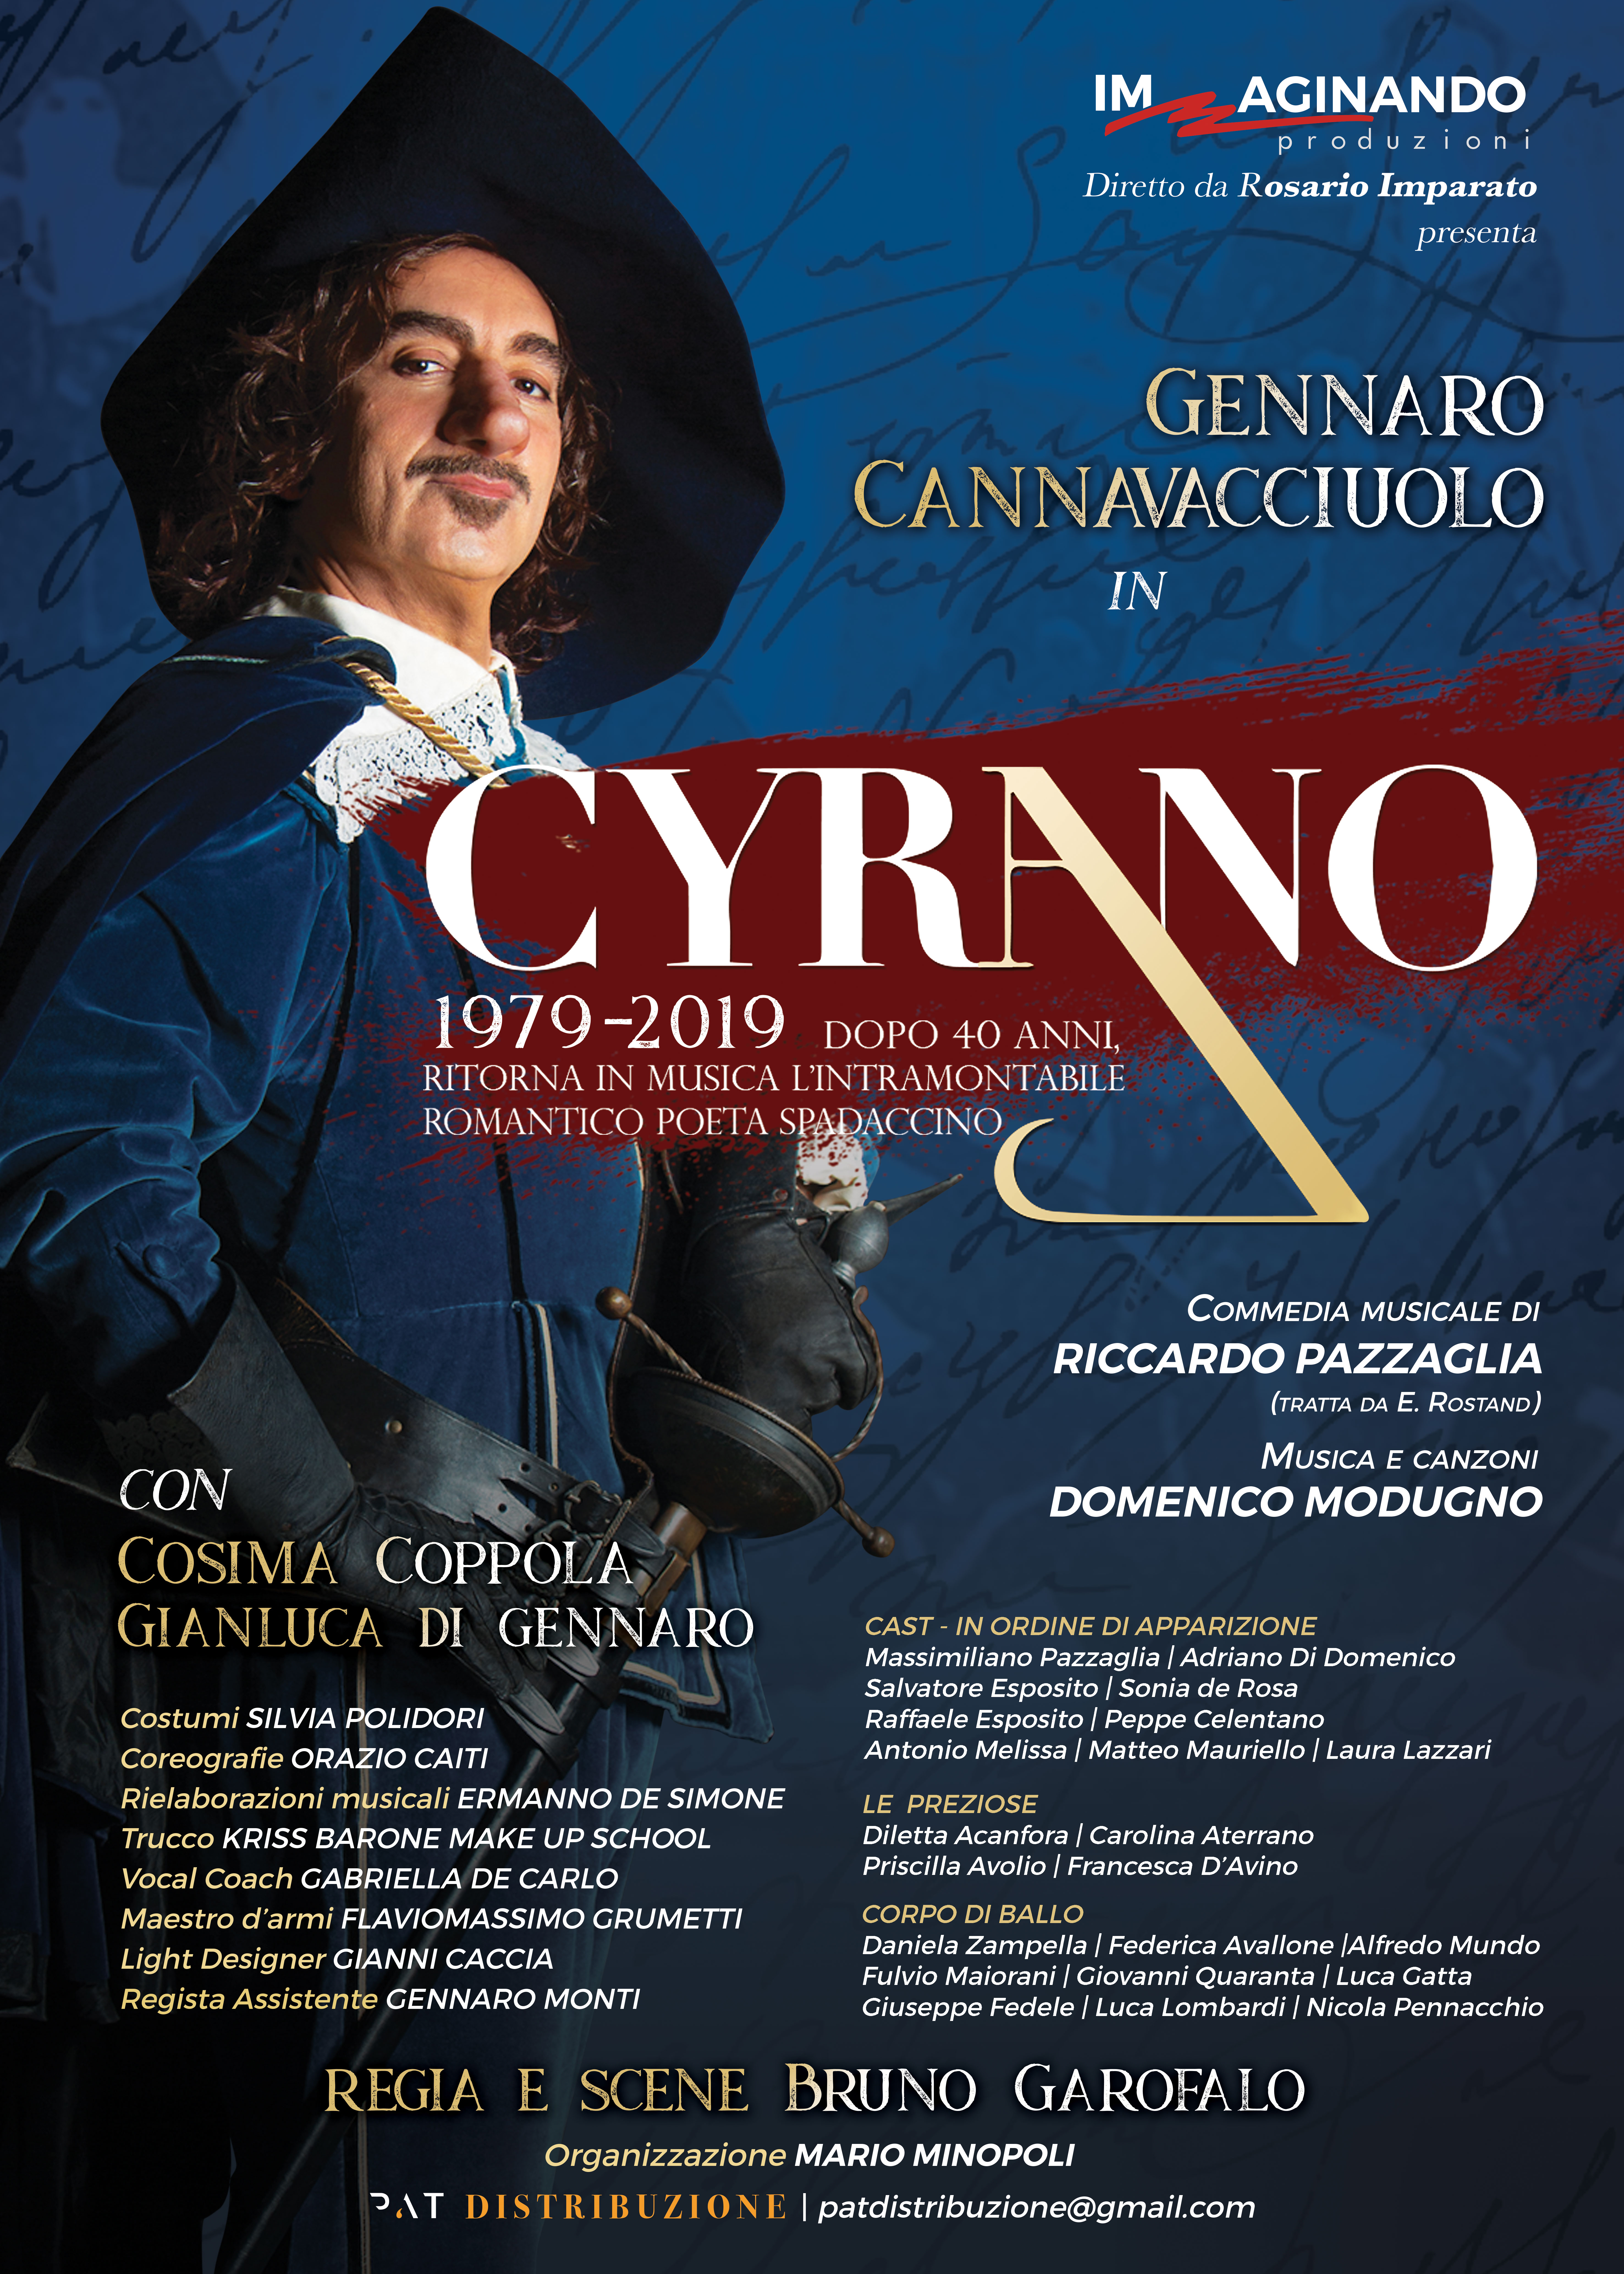 Il Cyrano di Pazzaglia e Modugno ritorna in scena dopo 40 anni Debutto nazionale: dal  6 al 15 dicembre al teatro Augusteo di Napoli